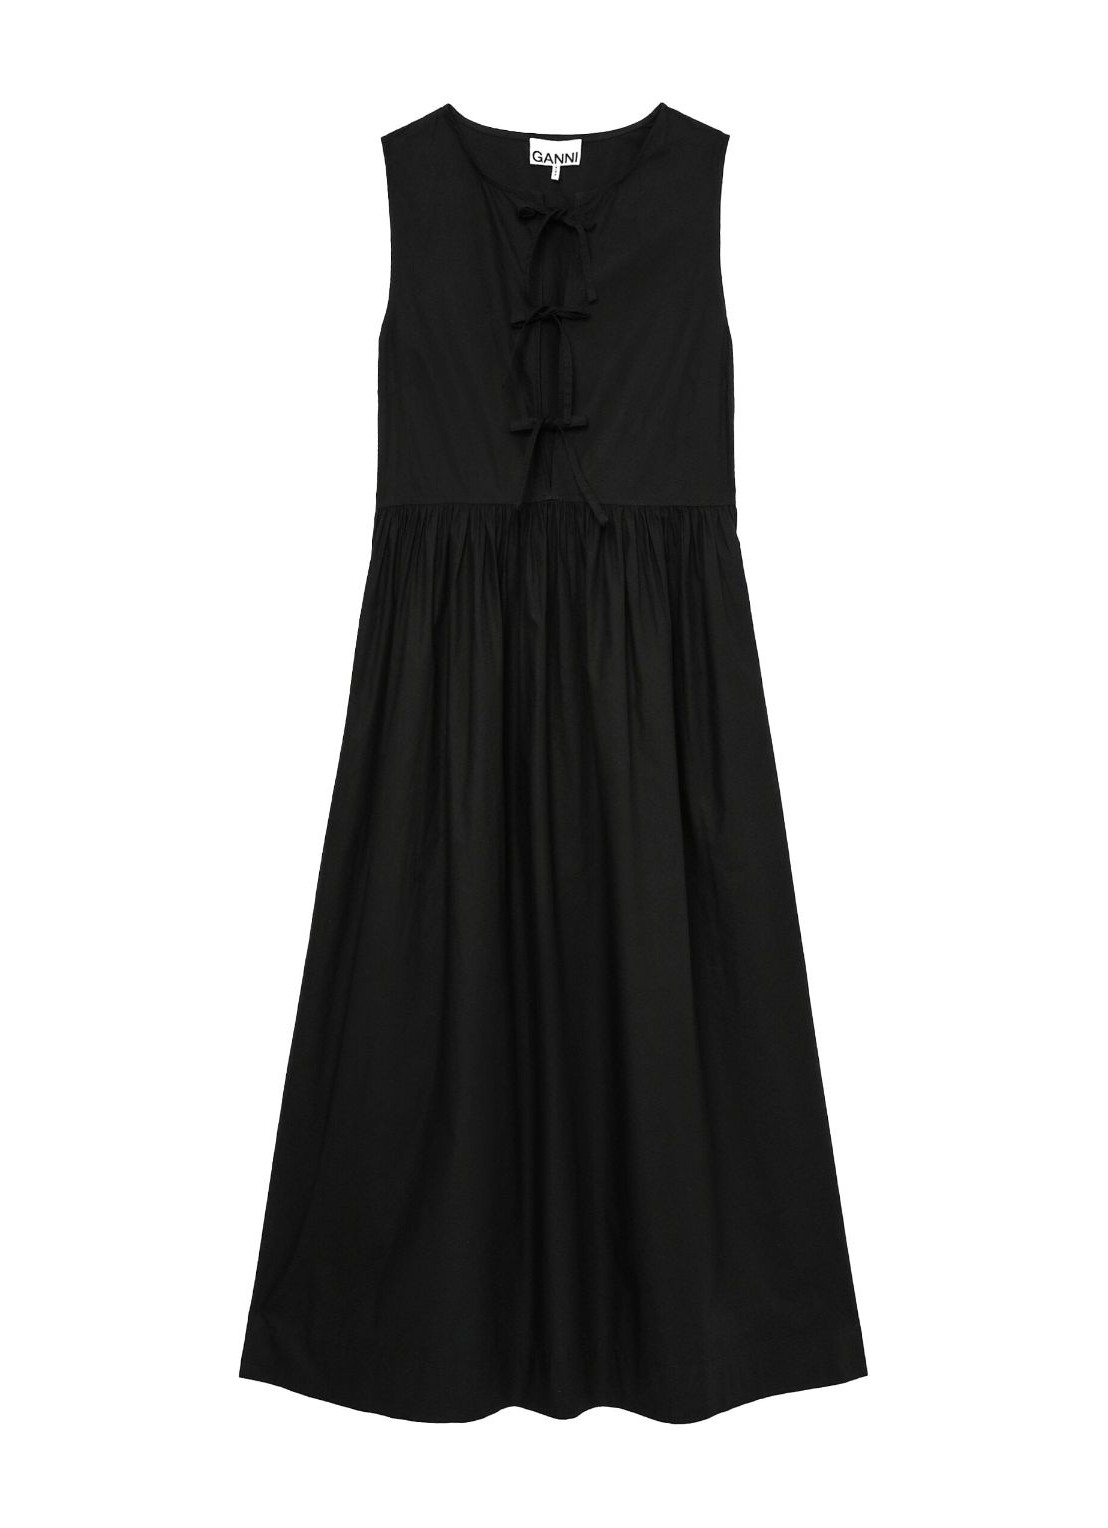 Vestido ganni dress woman cotton poplin midi dress f8453 099 talla negro
 